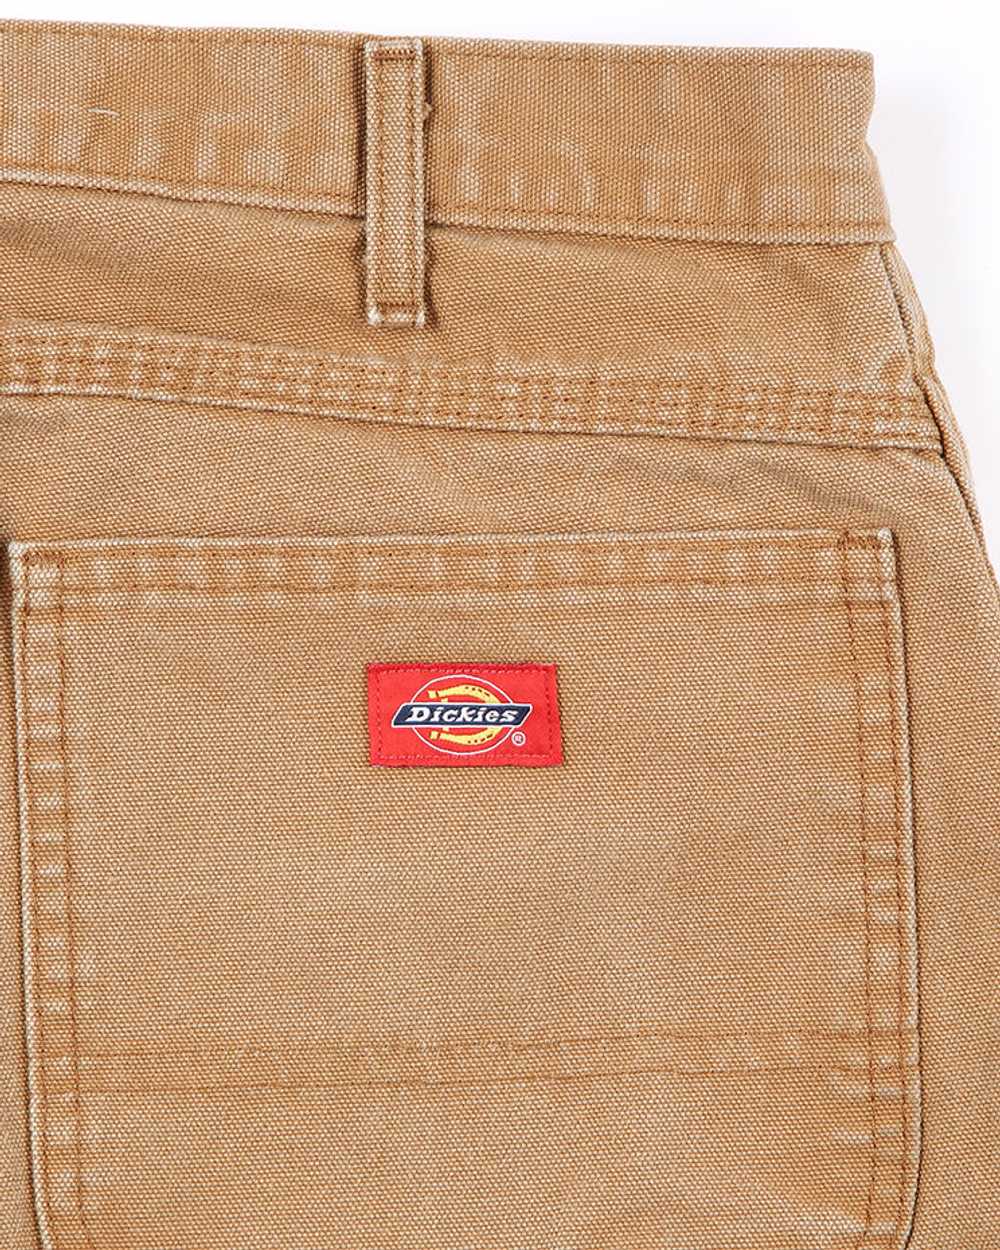 Vintage Dickies workwear jeans - W34 L30 - image 4